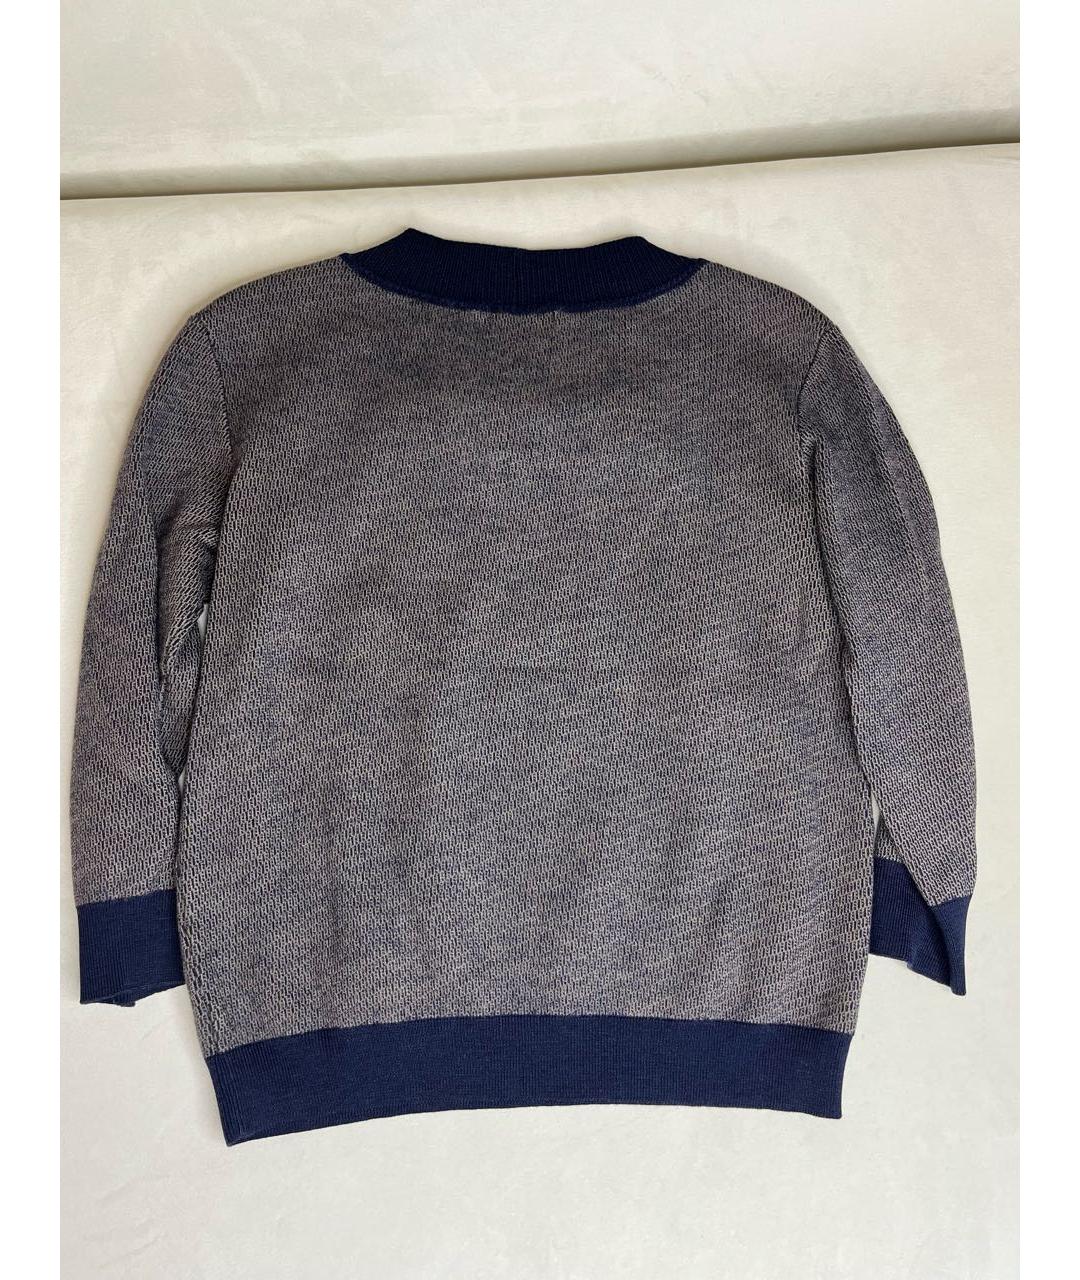 Falconeri Коричневый шерстяной джемпер / свитер, фото 2